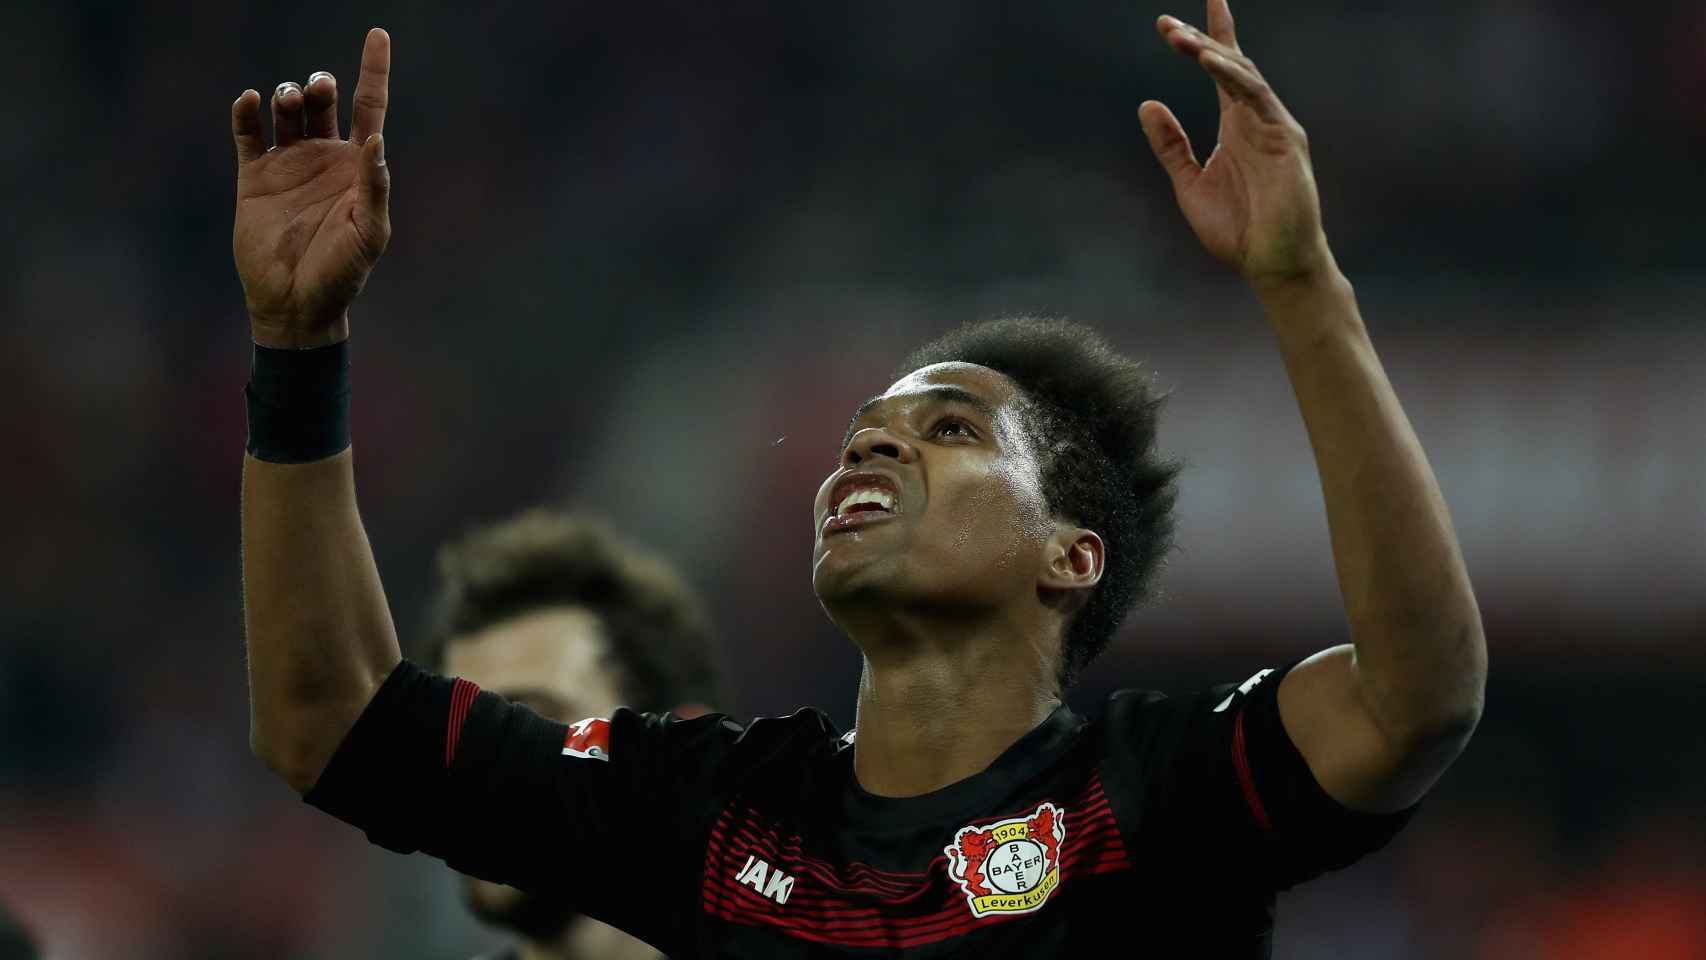 Wendell celebra un gol con el Bayer Leverkusen.